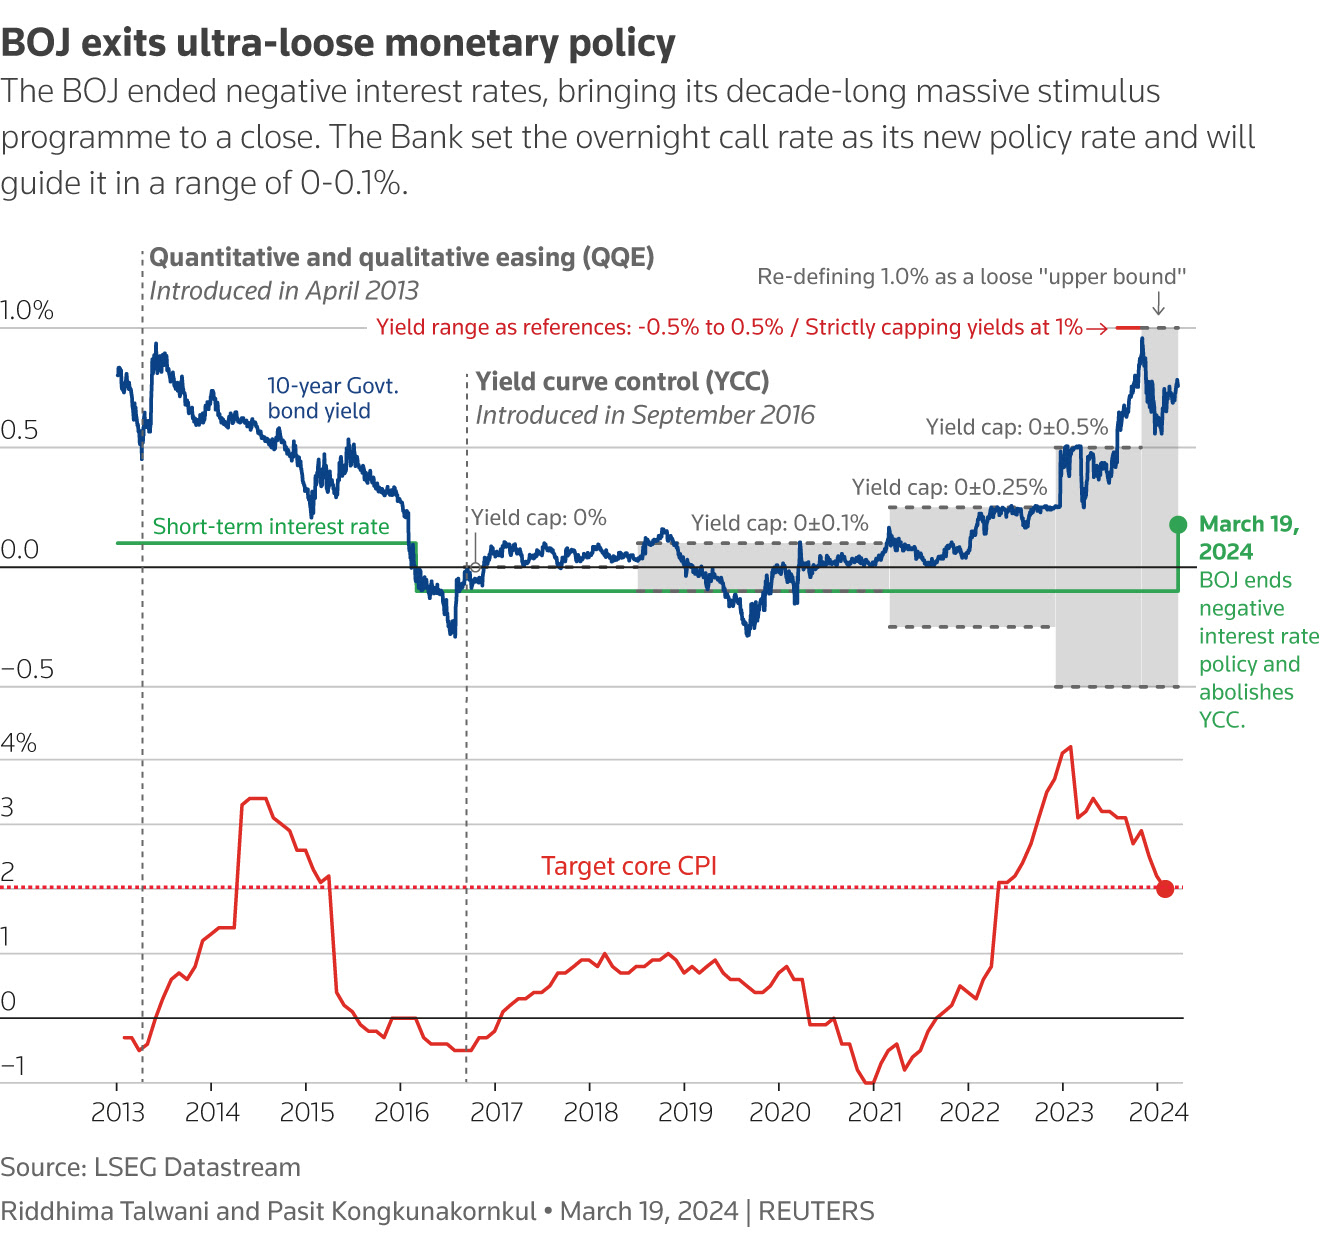 LSEG Data stream chart of BOJ monetary policy